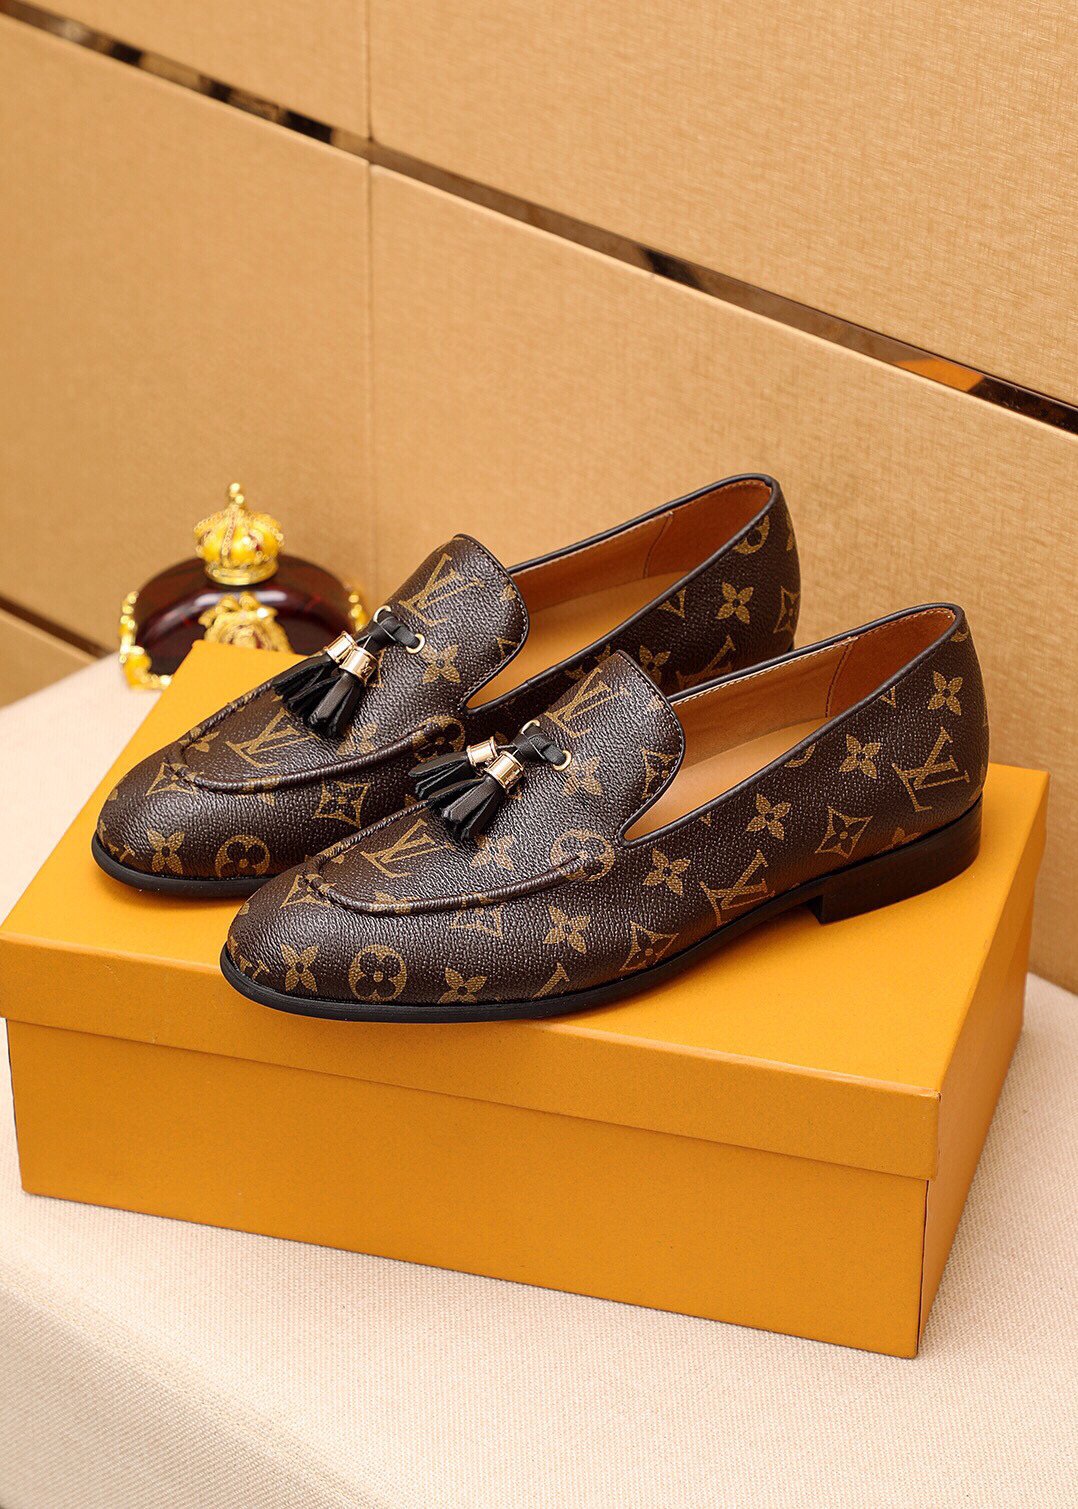 LV Louis Vuitton Men's Business Recreation Leather Shoes